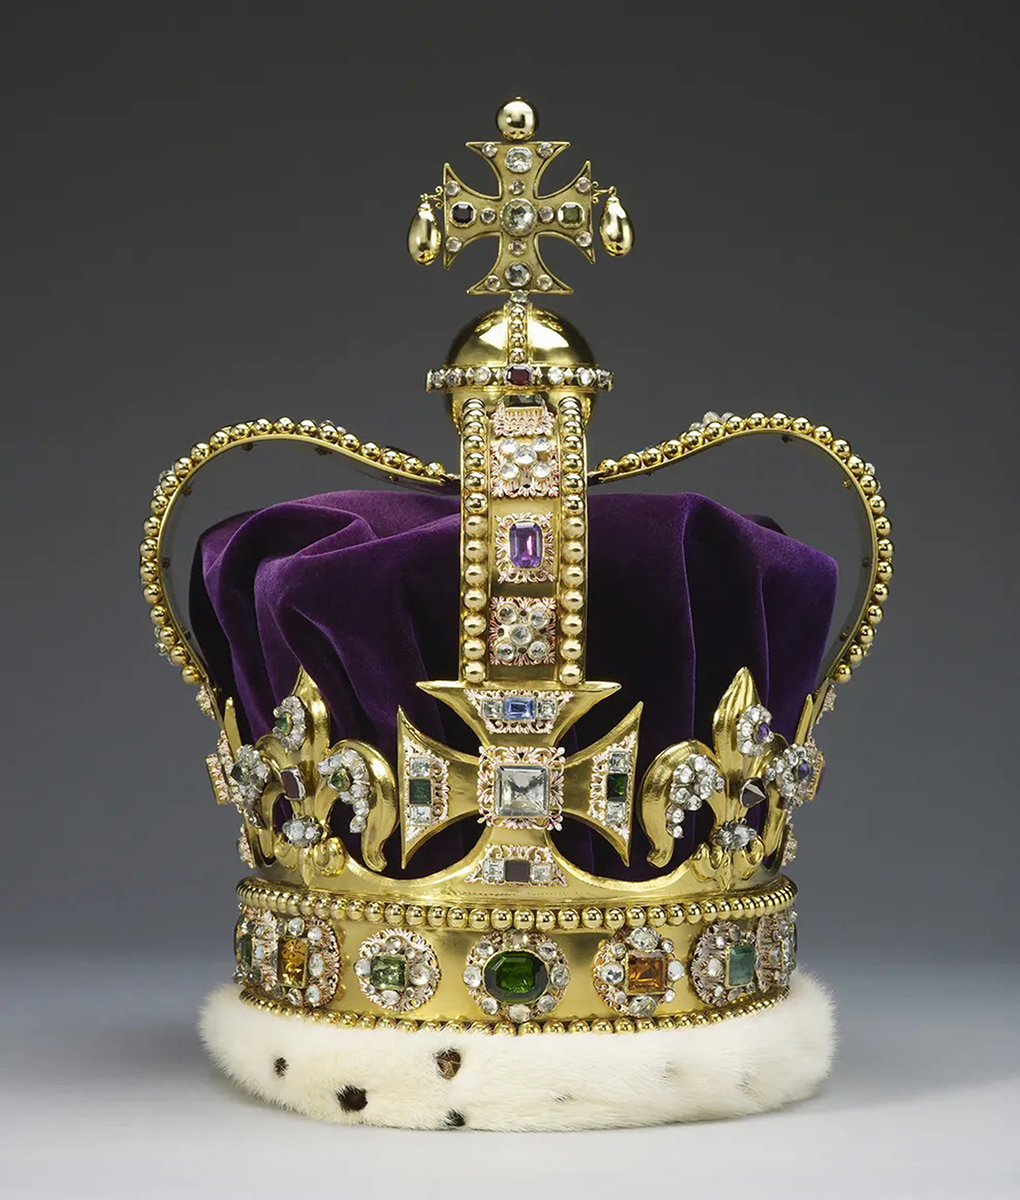 A coroa de Santo Eduardo, a peça central das joias da coroa britânica, foi usada pelo Rei Charles III na sua coroação